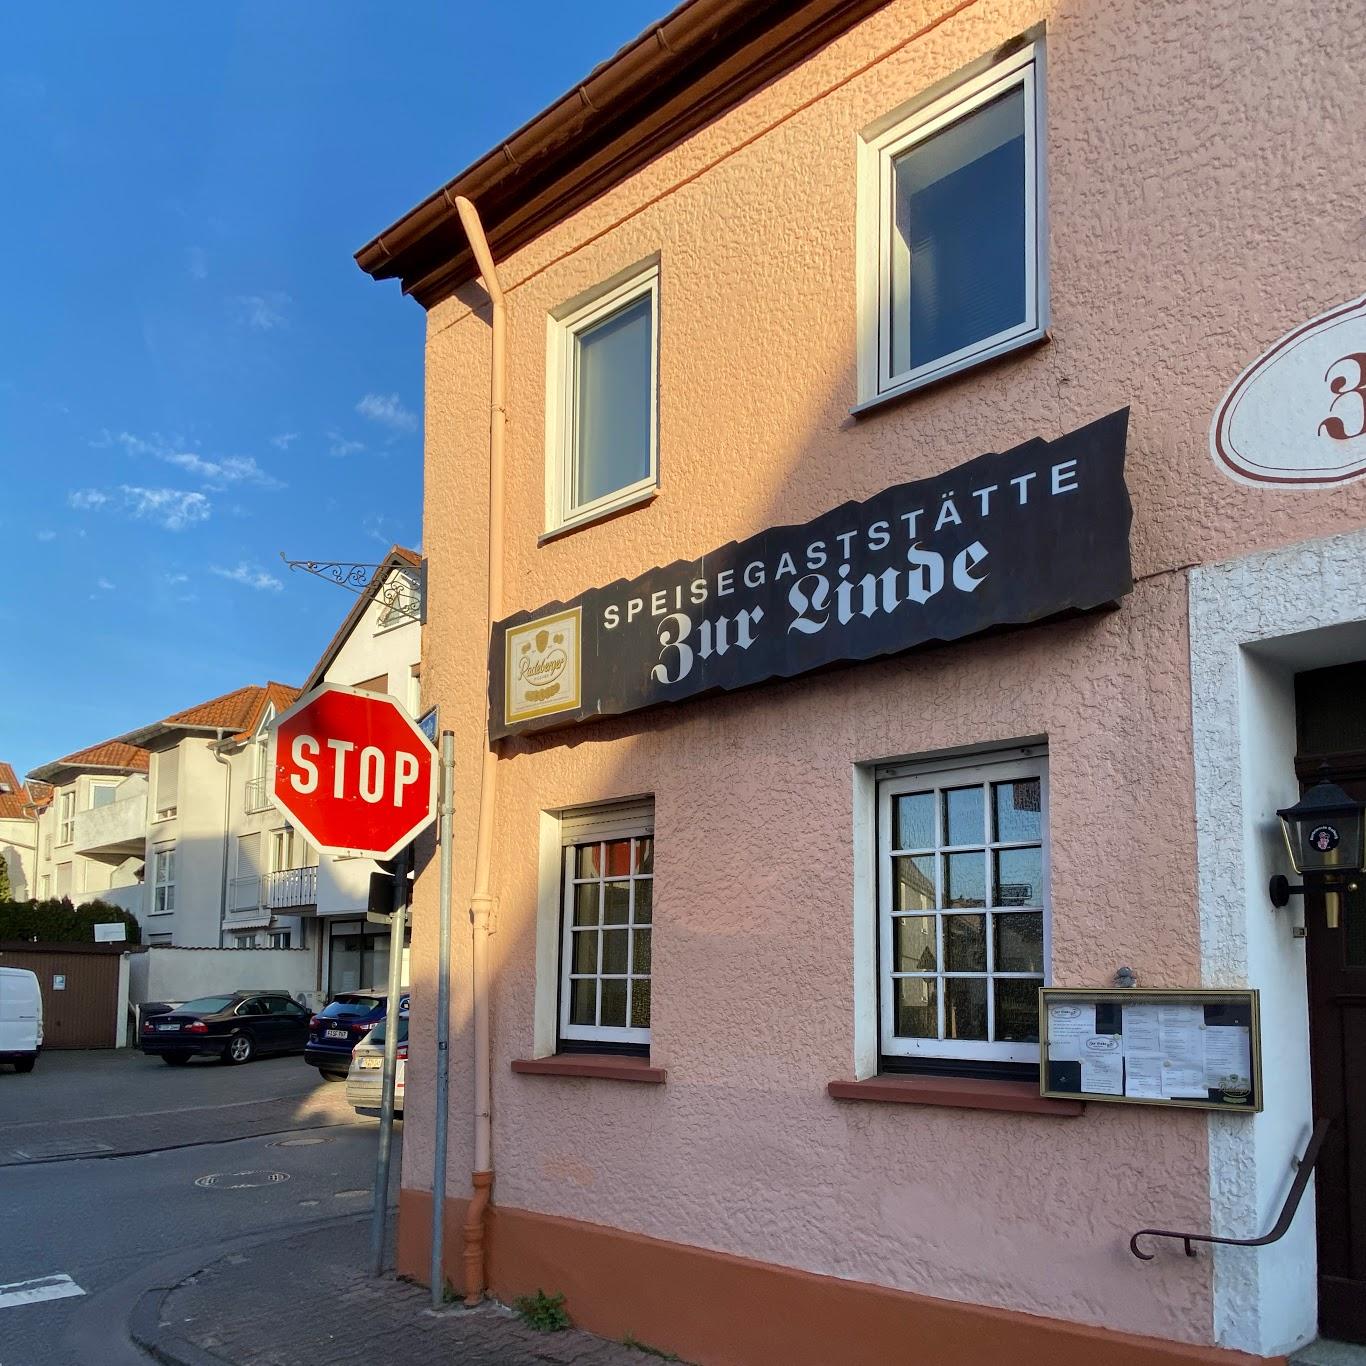 Restaurant "Zur Linde" in Frankfurt am Main